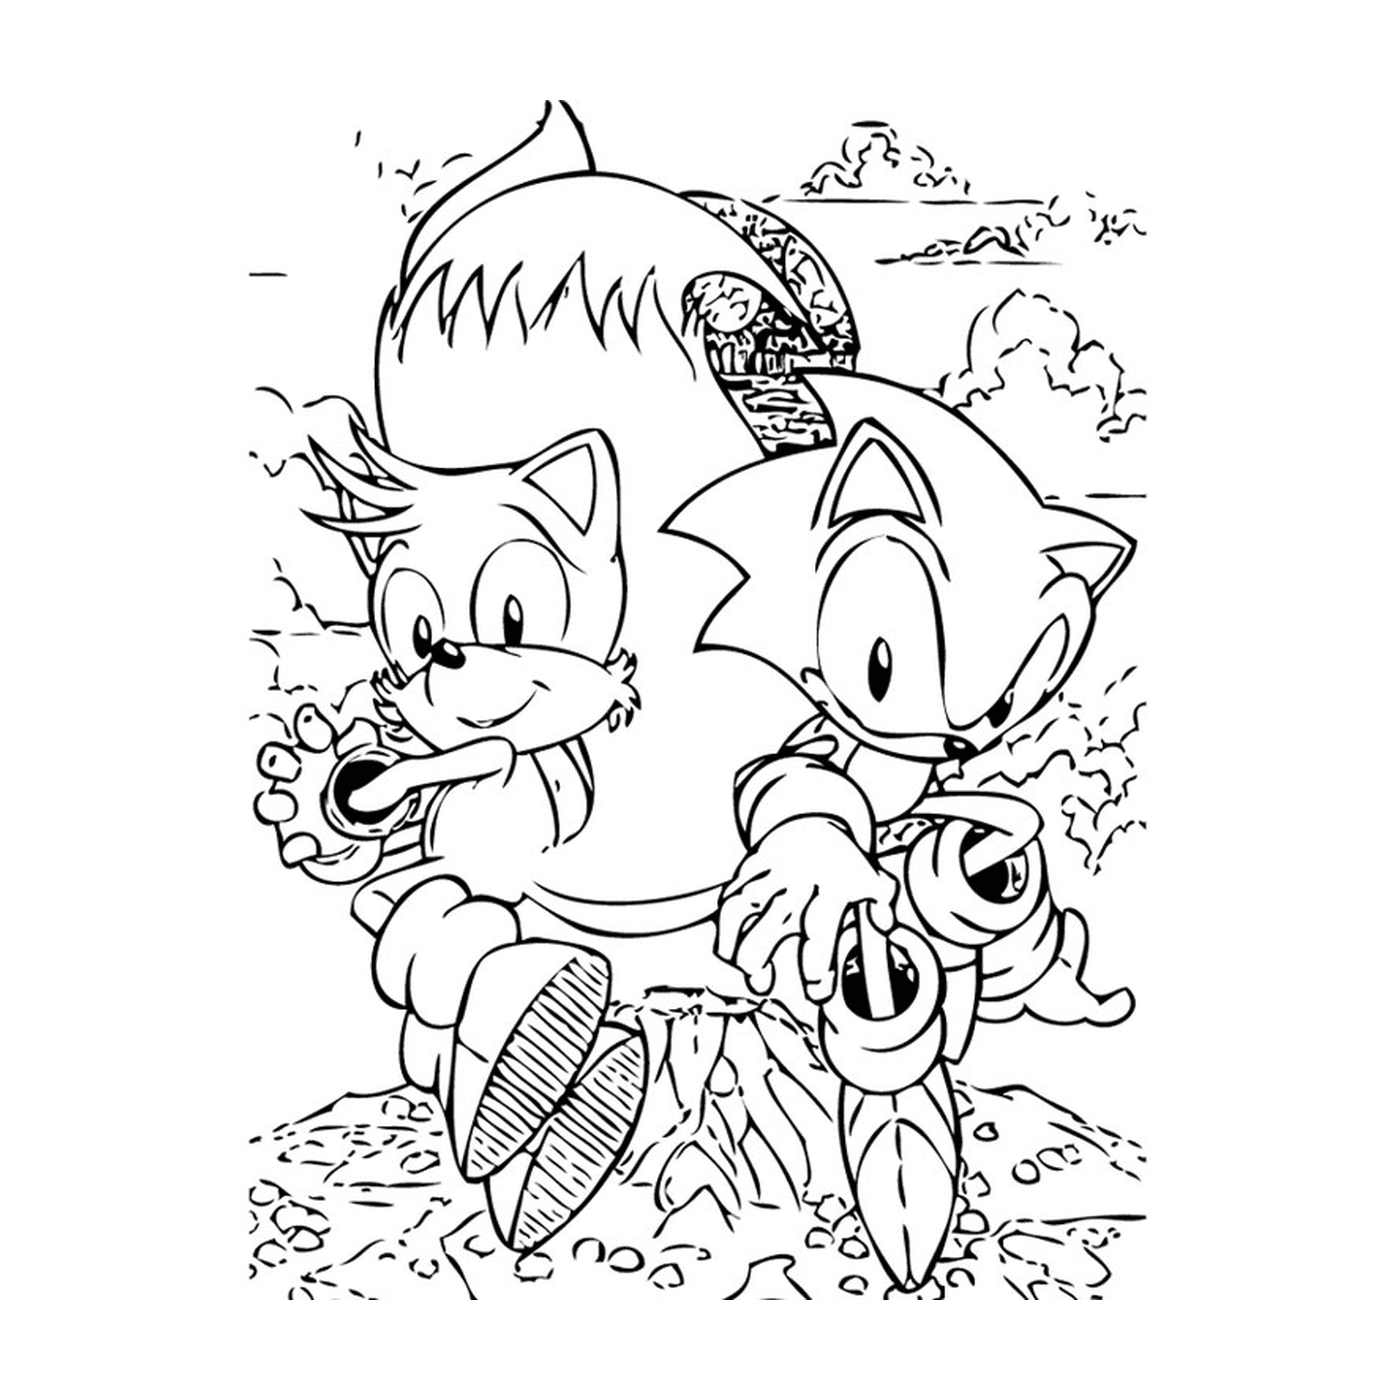  Sonic e code in duetto 